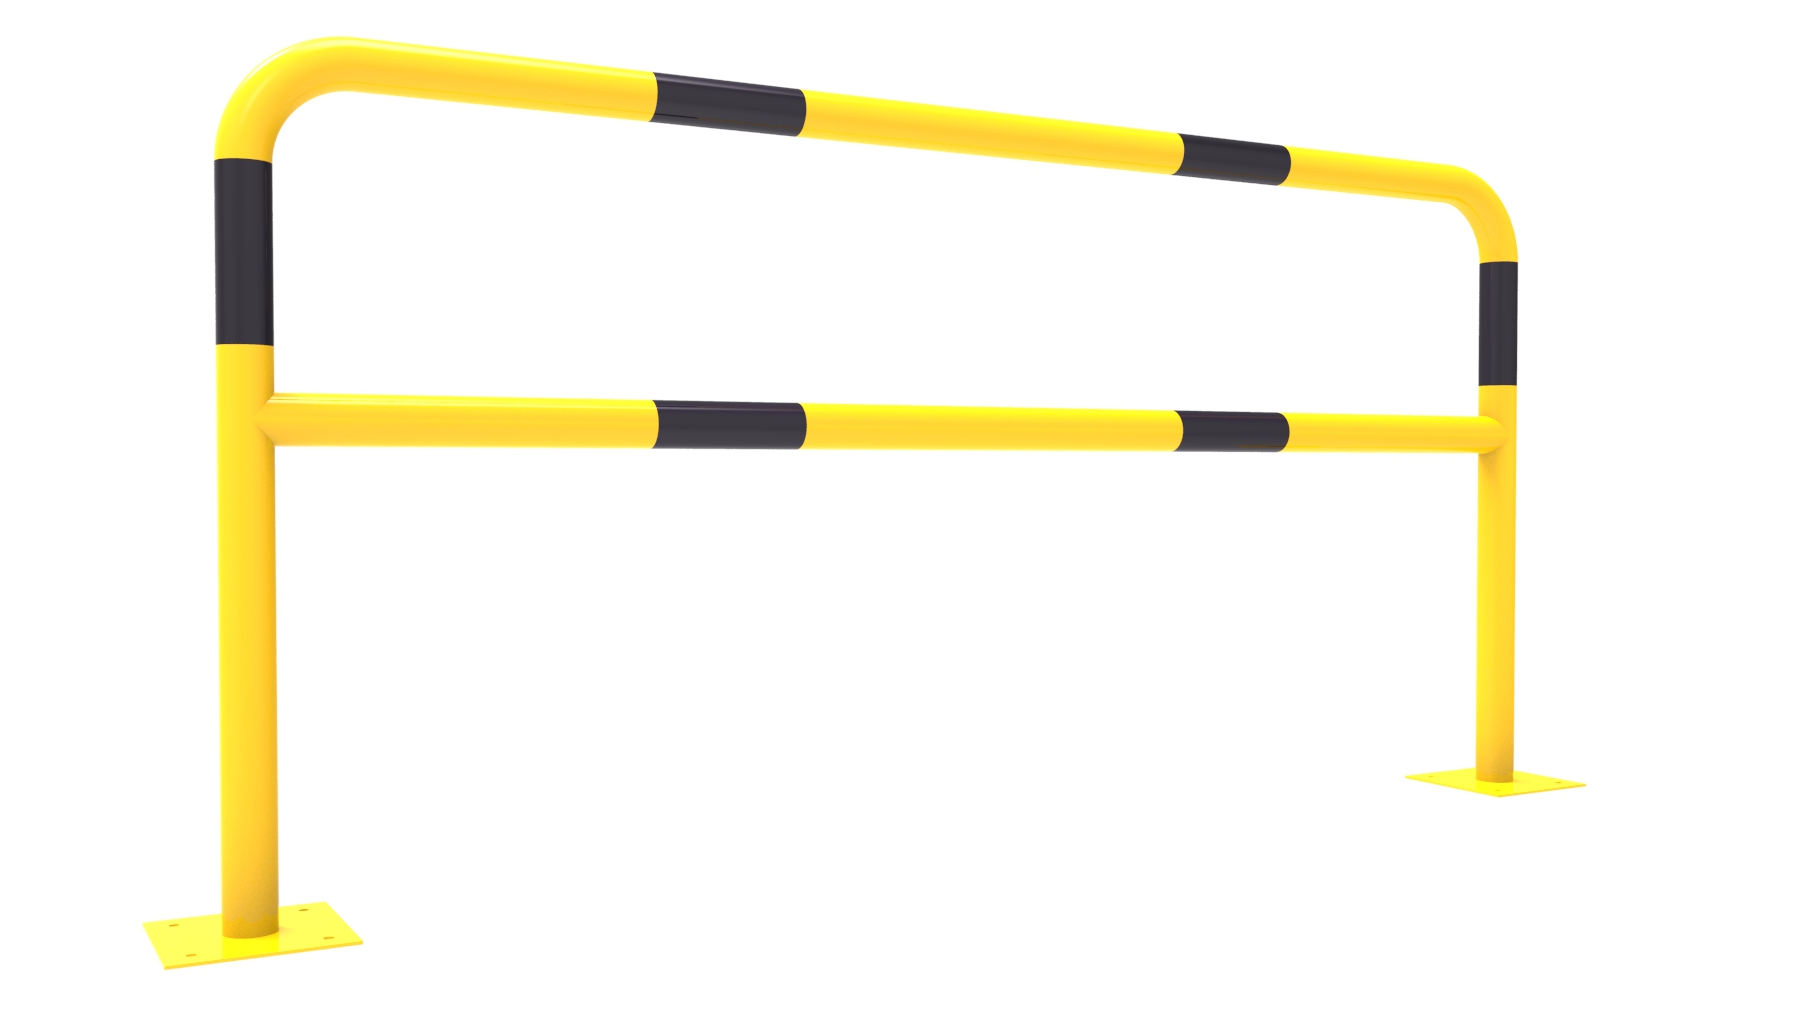 Arceau de protection jaune et noir